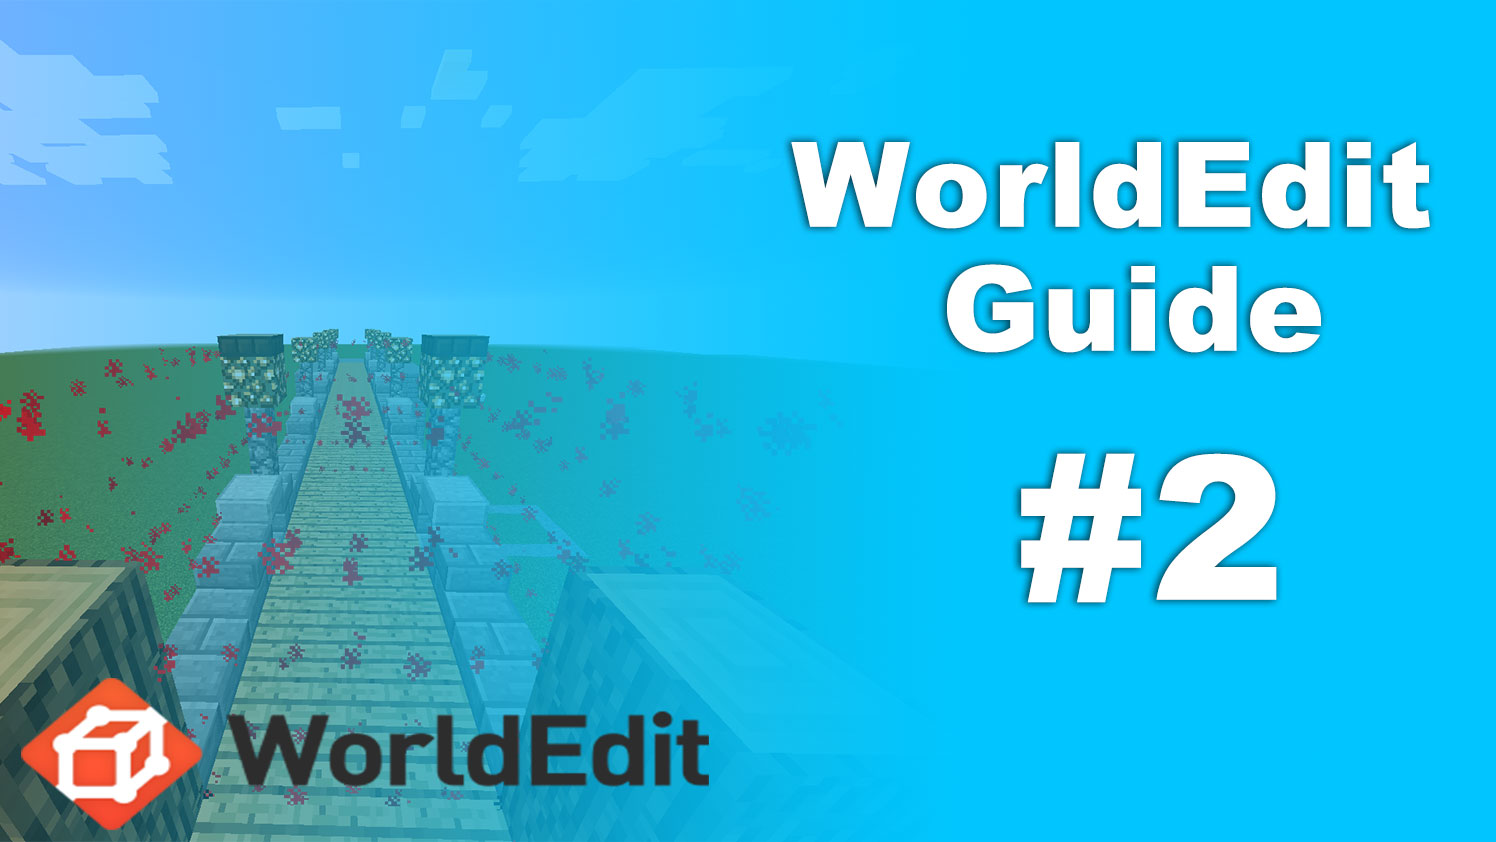 Worldedit Guide 1 範囲選択と調整の方法と情報表示 脱 初心者を目指すマインクラフト